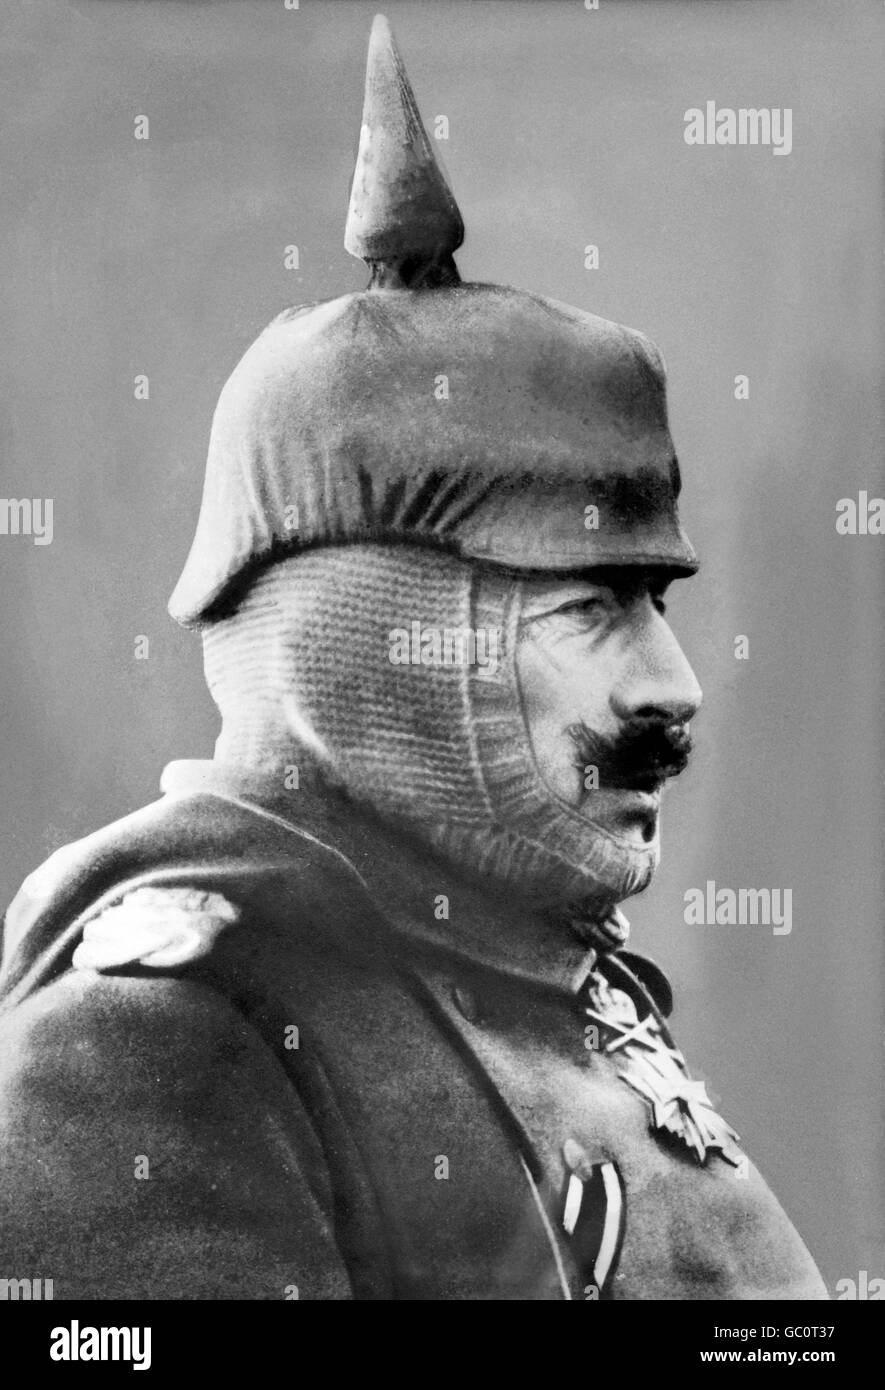 Kaiser Wilhelm II. Porträt von Kaiser Wilhelm II (1859-1941), Kaiser von Deutschland und König von Preußen, Bereich Uniform tragen.  Foto von Bain News Service, c.1910-1915. Stockfoto